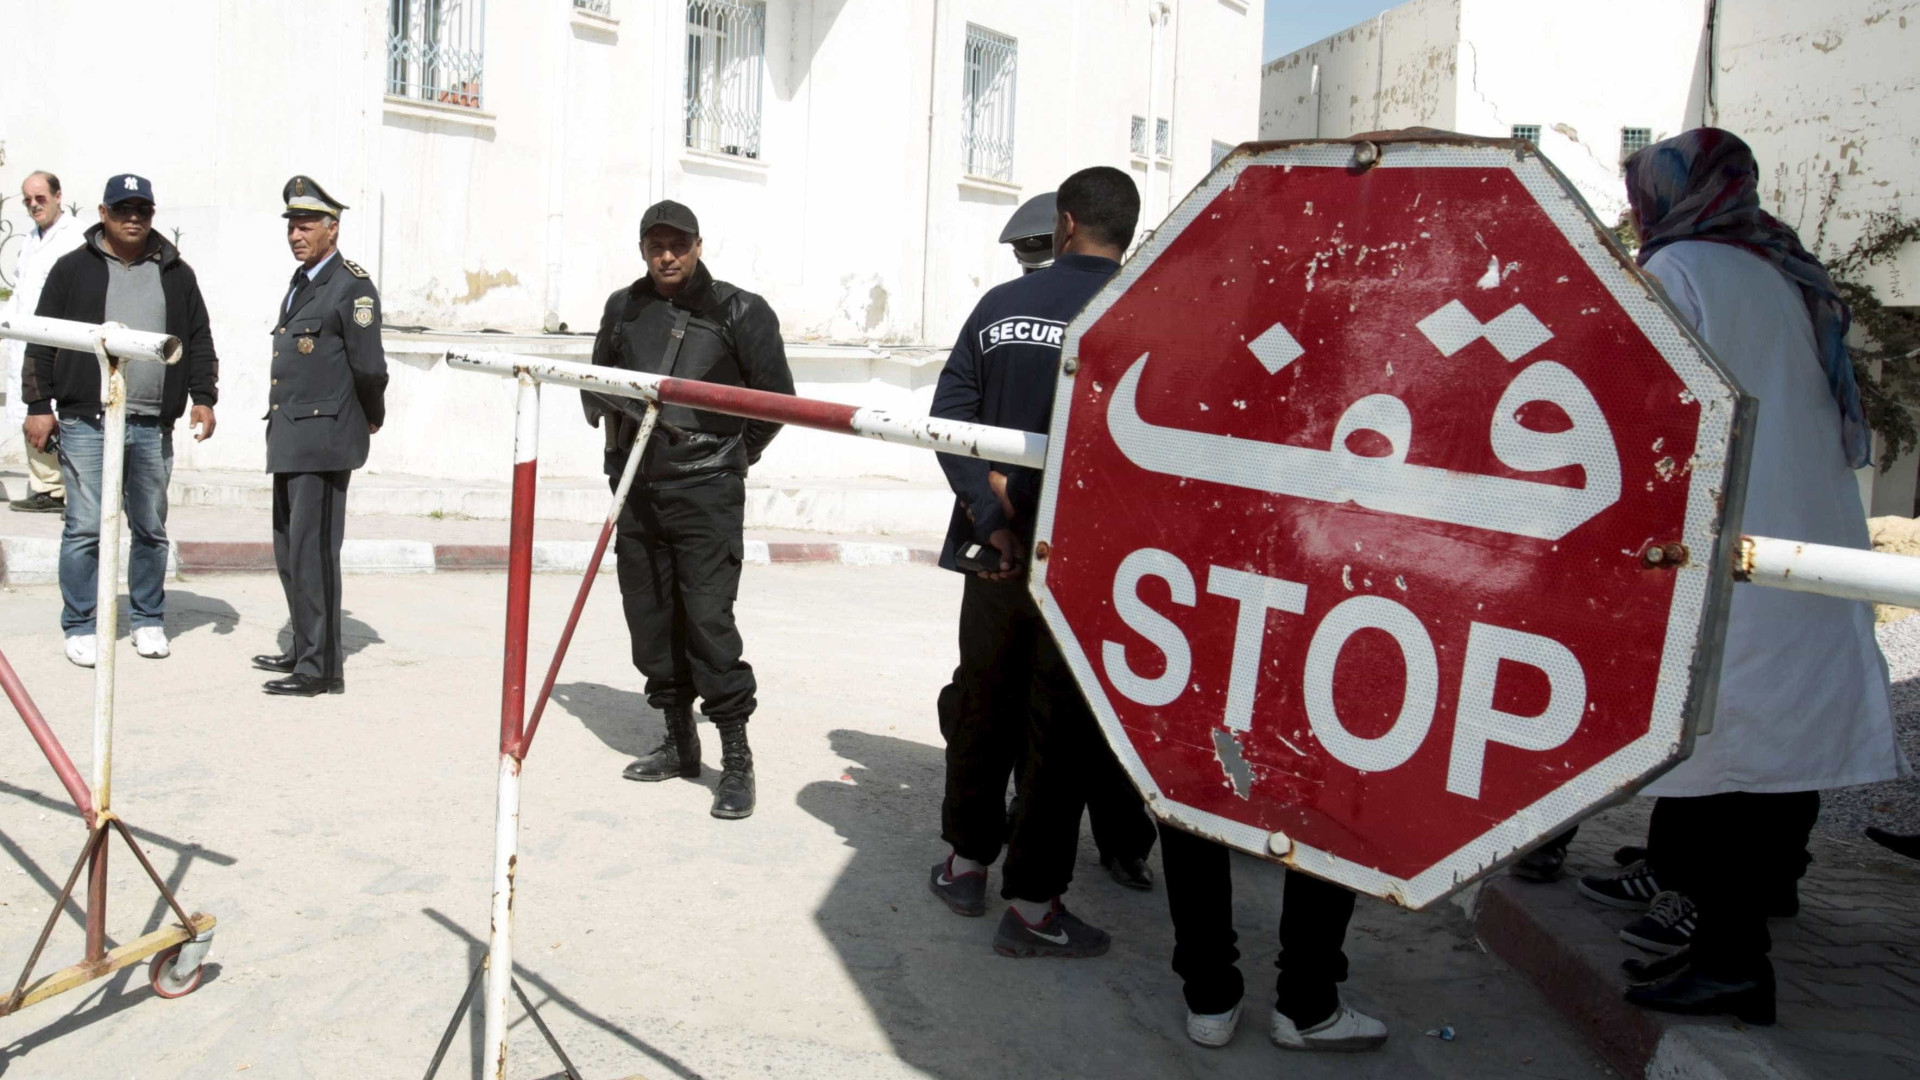 Tunísia decreta estado de emergência dias depois de atentado